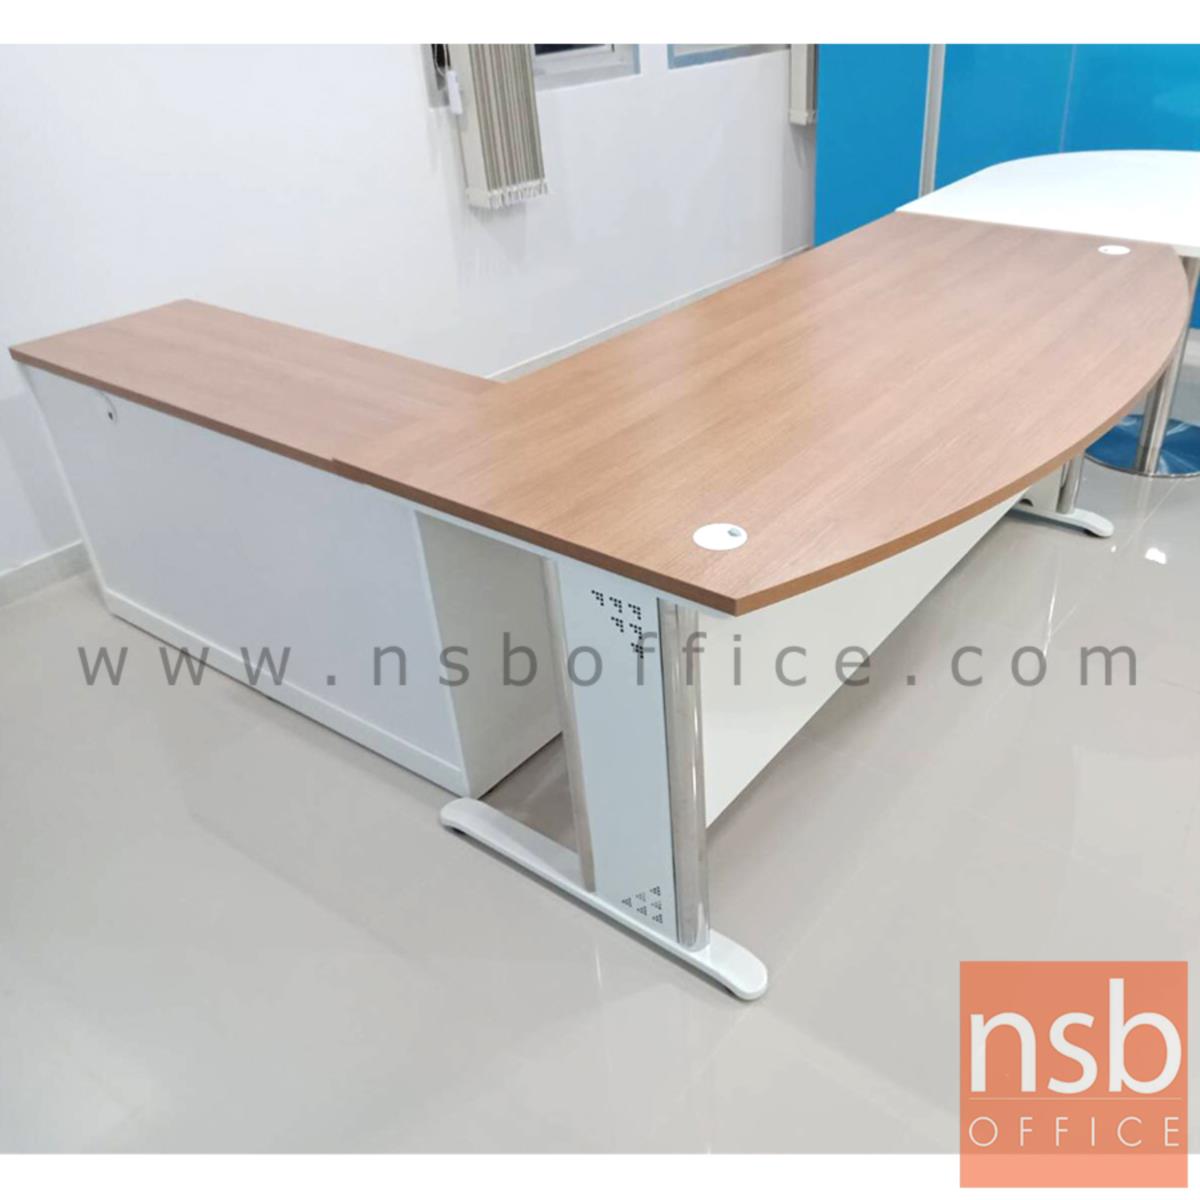 โต๊ะผู้บริหารตัวแอล  รุ่น MN-1820 ขนาด 180W cm. พร้อมลิ้นชักและตู้ข้าง ขาเหล็ก